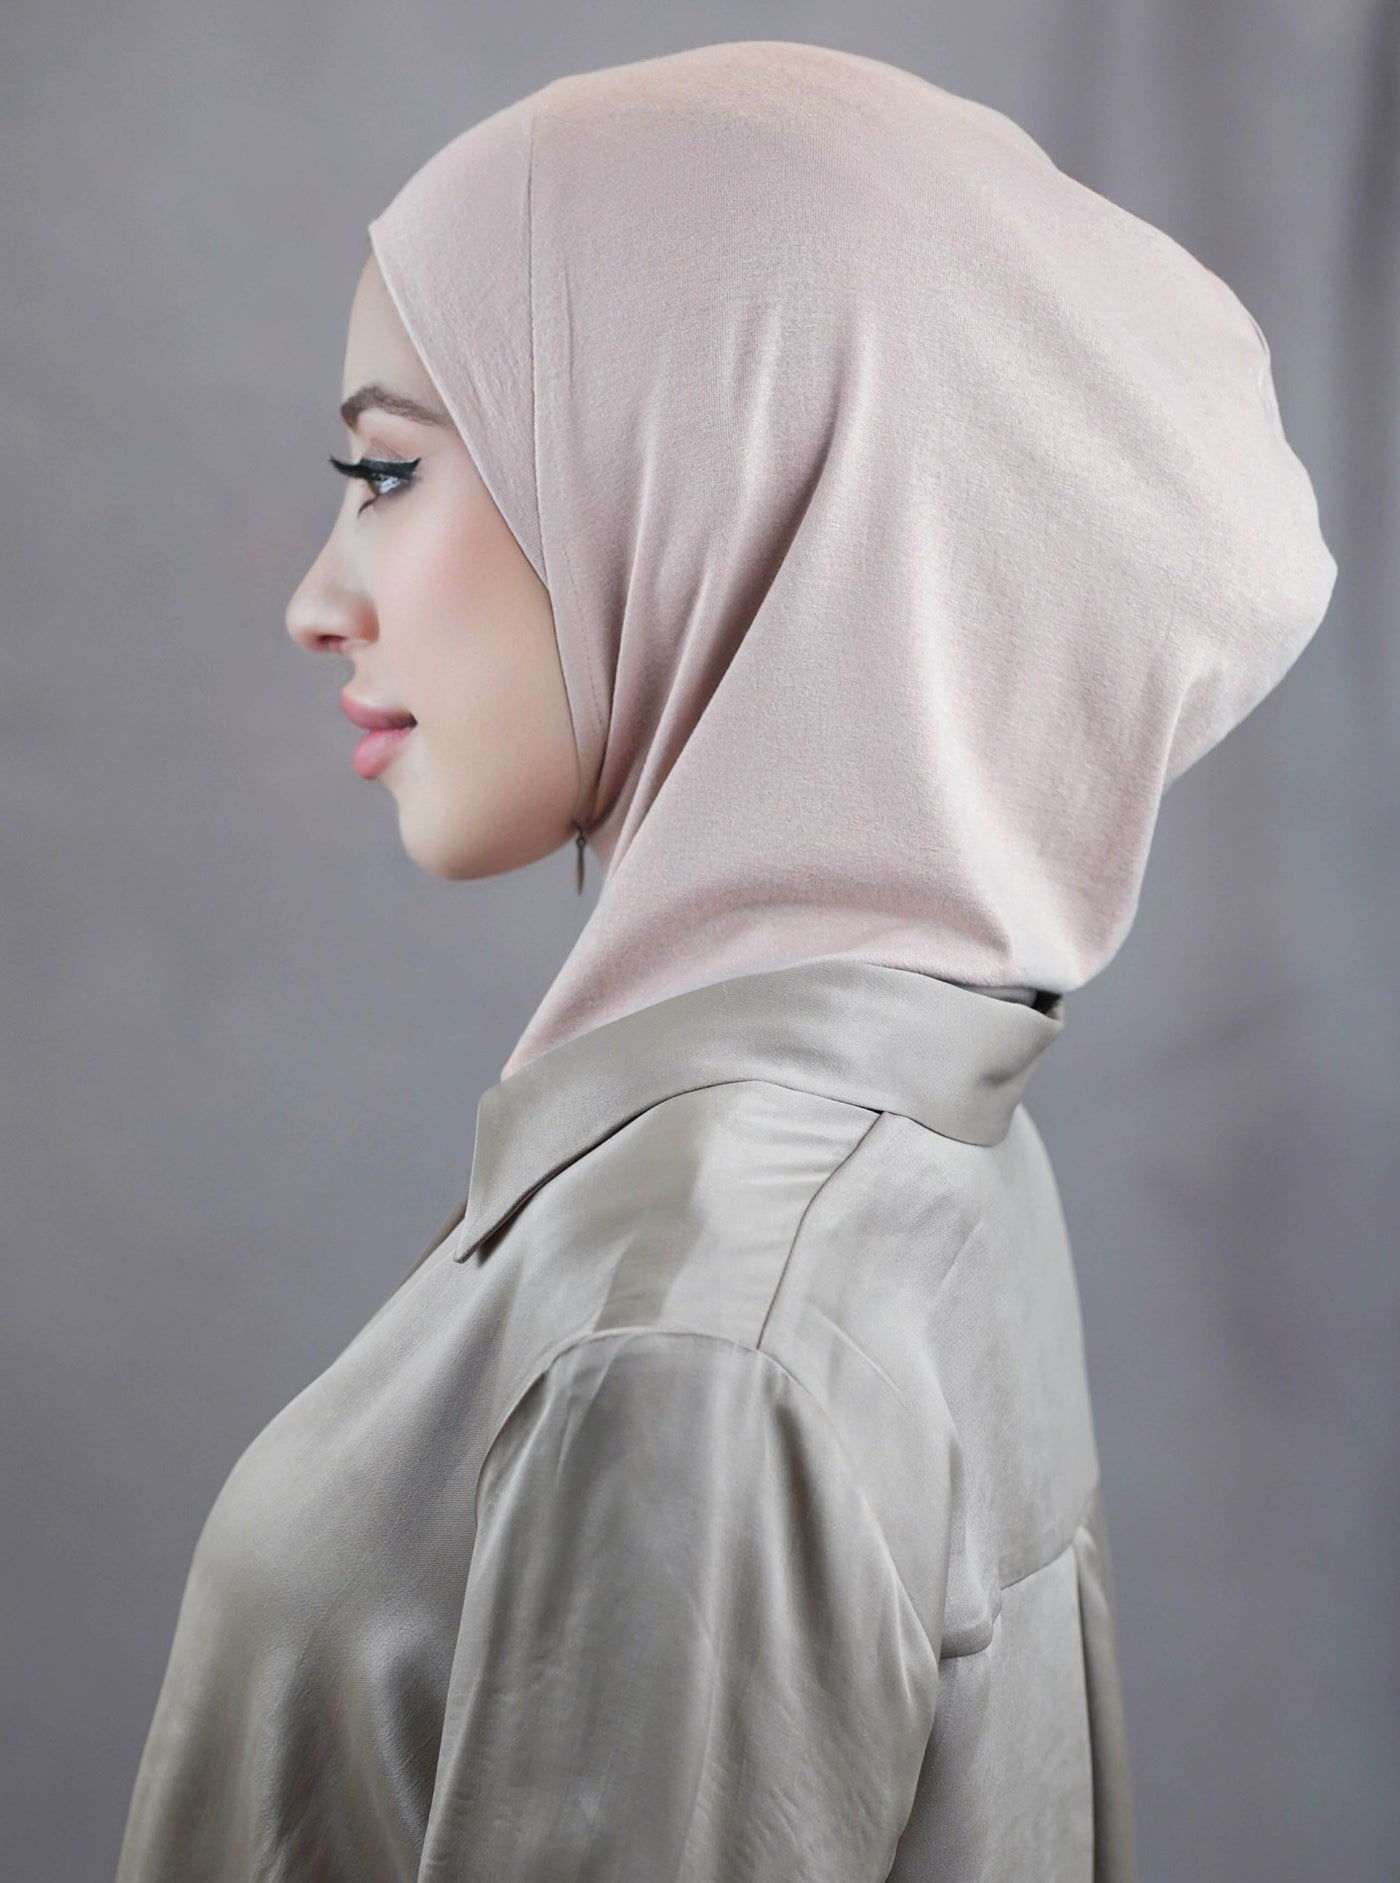 Zip hijab - lightrose-beige